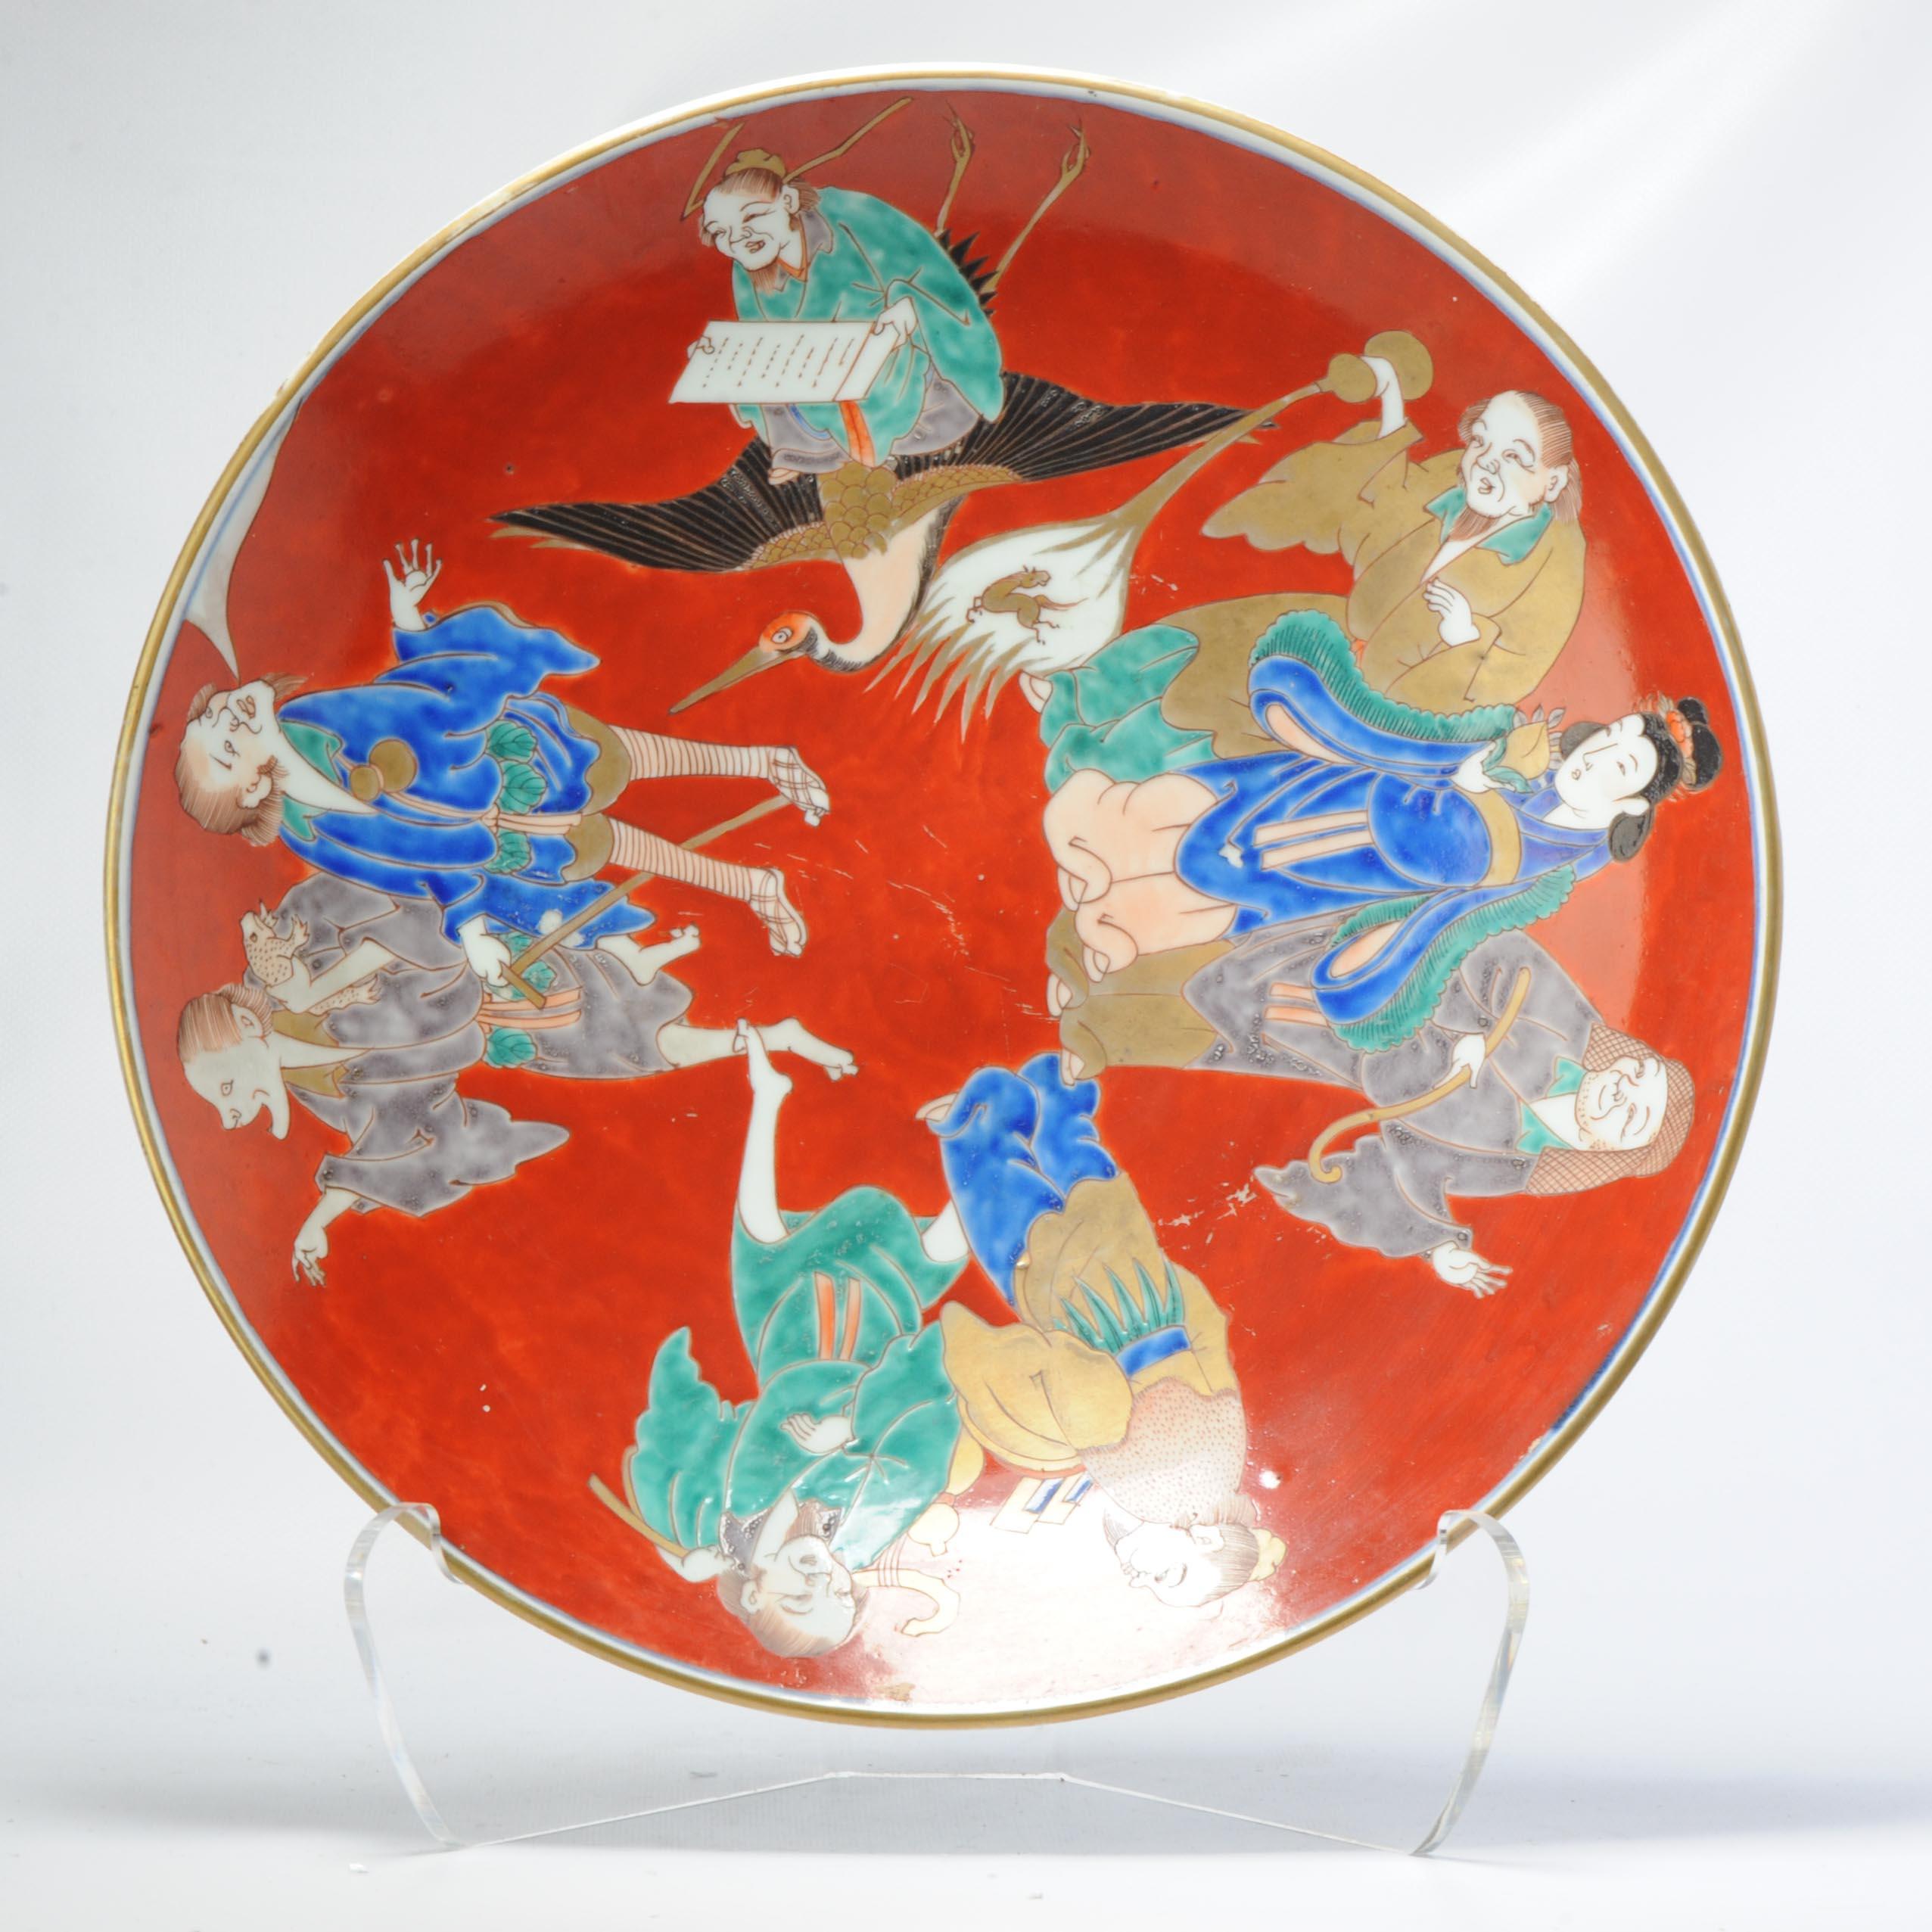 Sehr schönes Stück mit einer schön gemalten Szene der acht Unsterblichen auf roter Grundfarbe. Die Rückseite ist mit Blumenranken verziert


Bedingung
Perfekt. Größe 400x75mm DurchmesserxHöhe
Zeitraum
19. Jahrhundert Edo-Periode